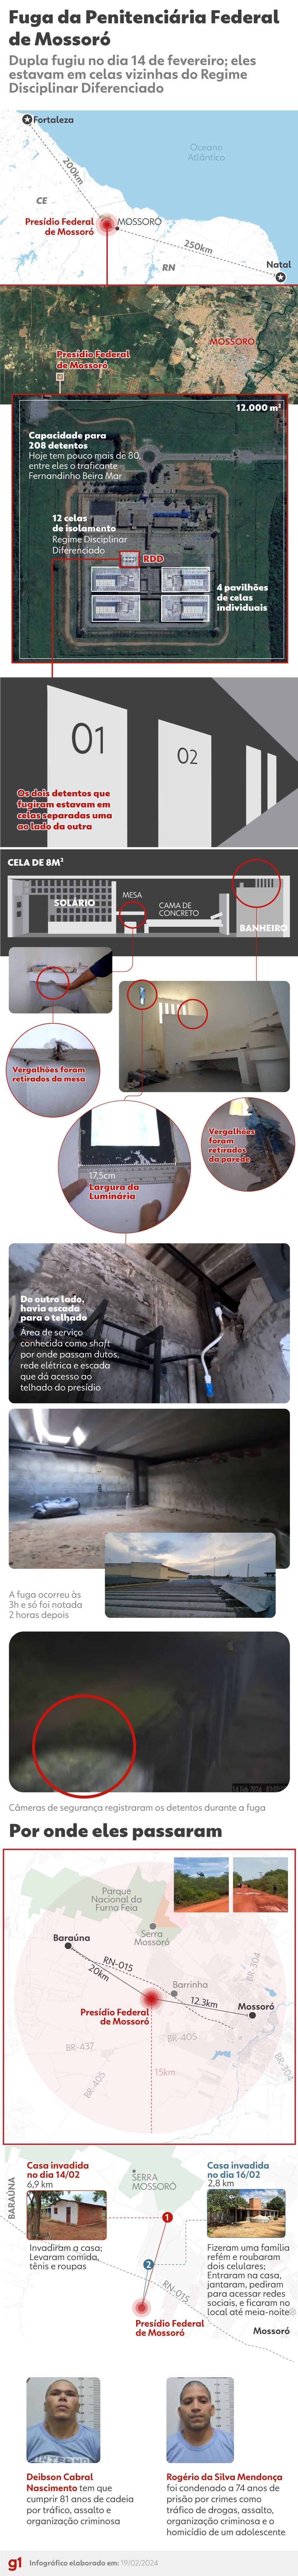 Infográfico mostra detalhes sobre a trajetória da fuga de presos da Penitenciária Federal de Mossoró